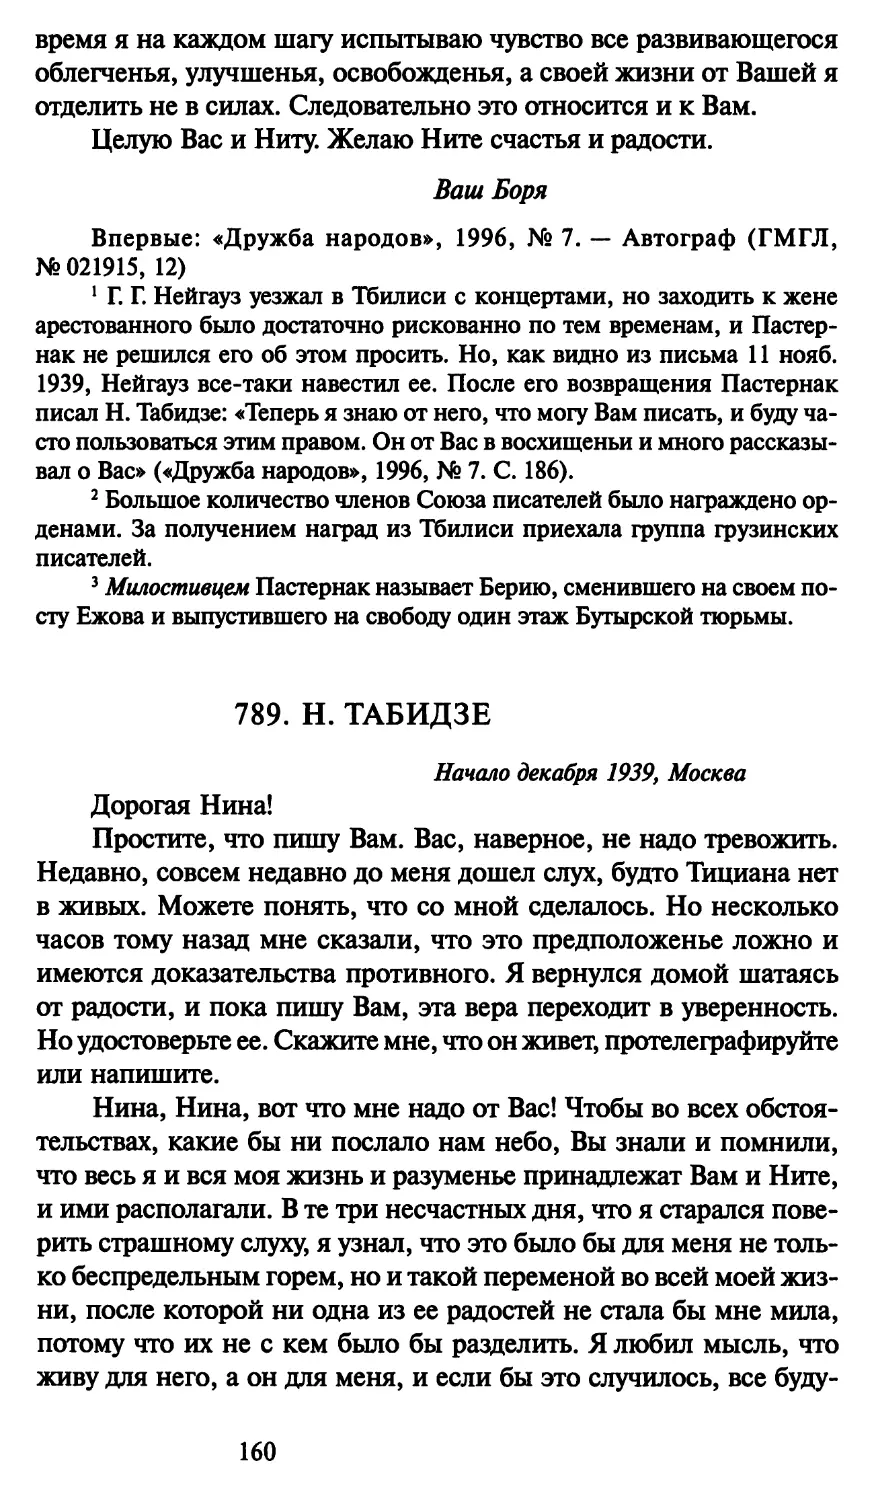 789. Н. Табидзе начало декабря 1939